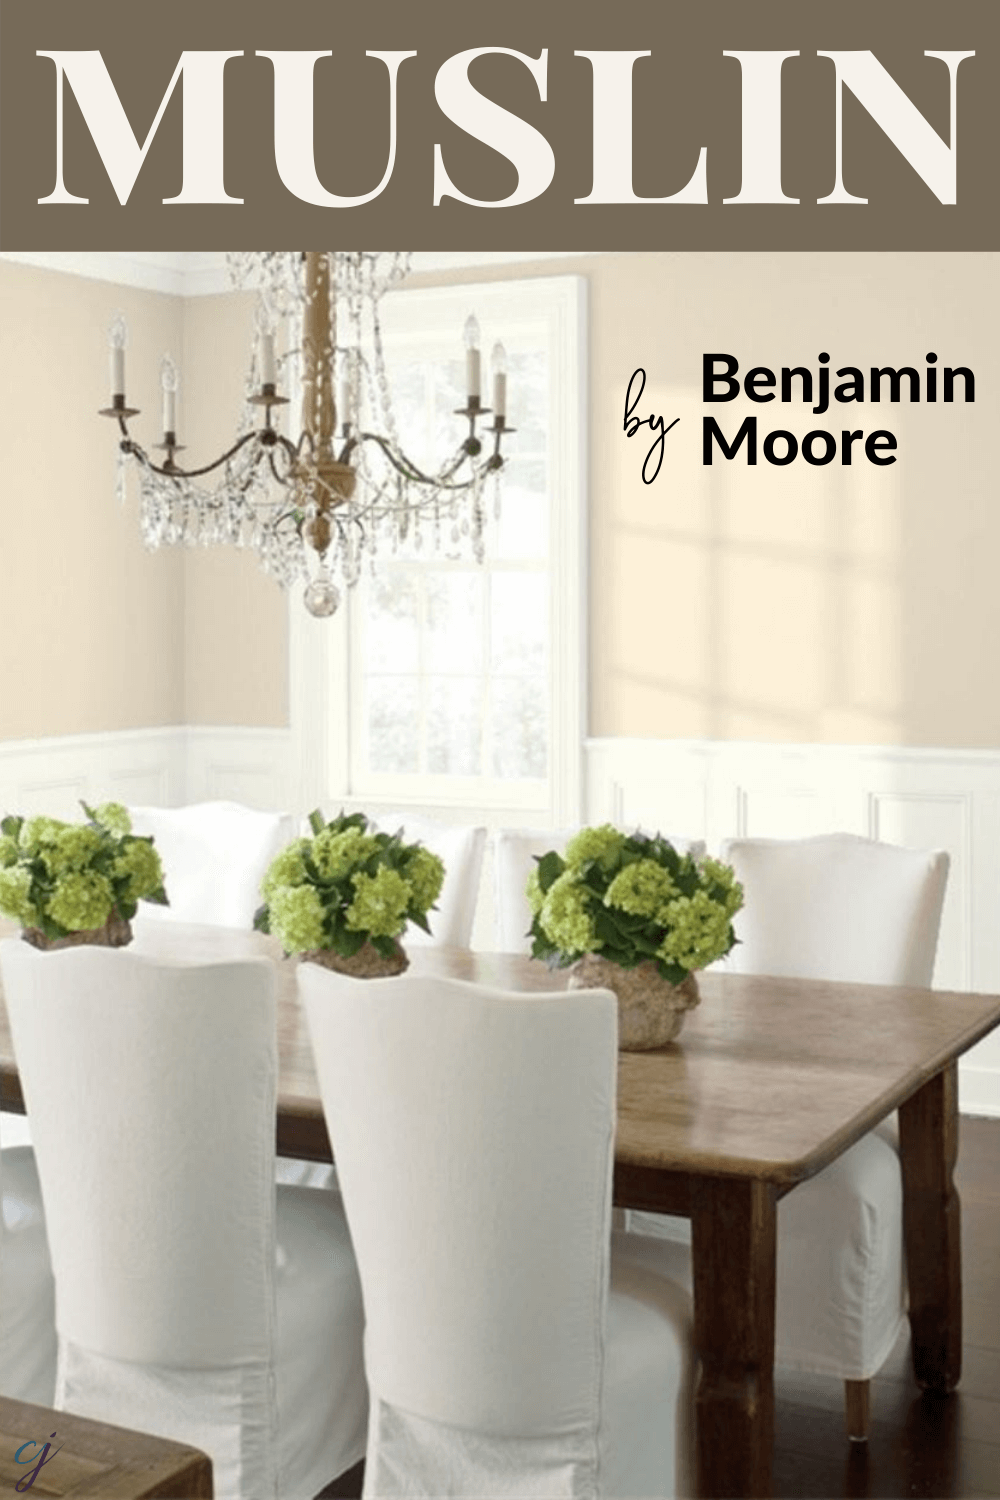 Benjamin Moore Muslin Colour Review 